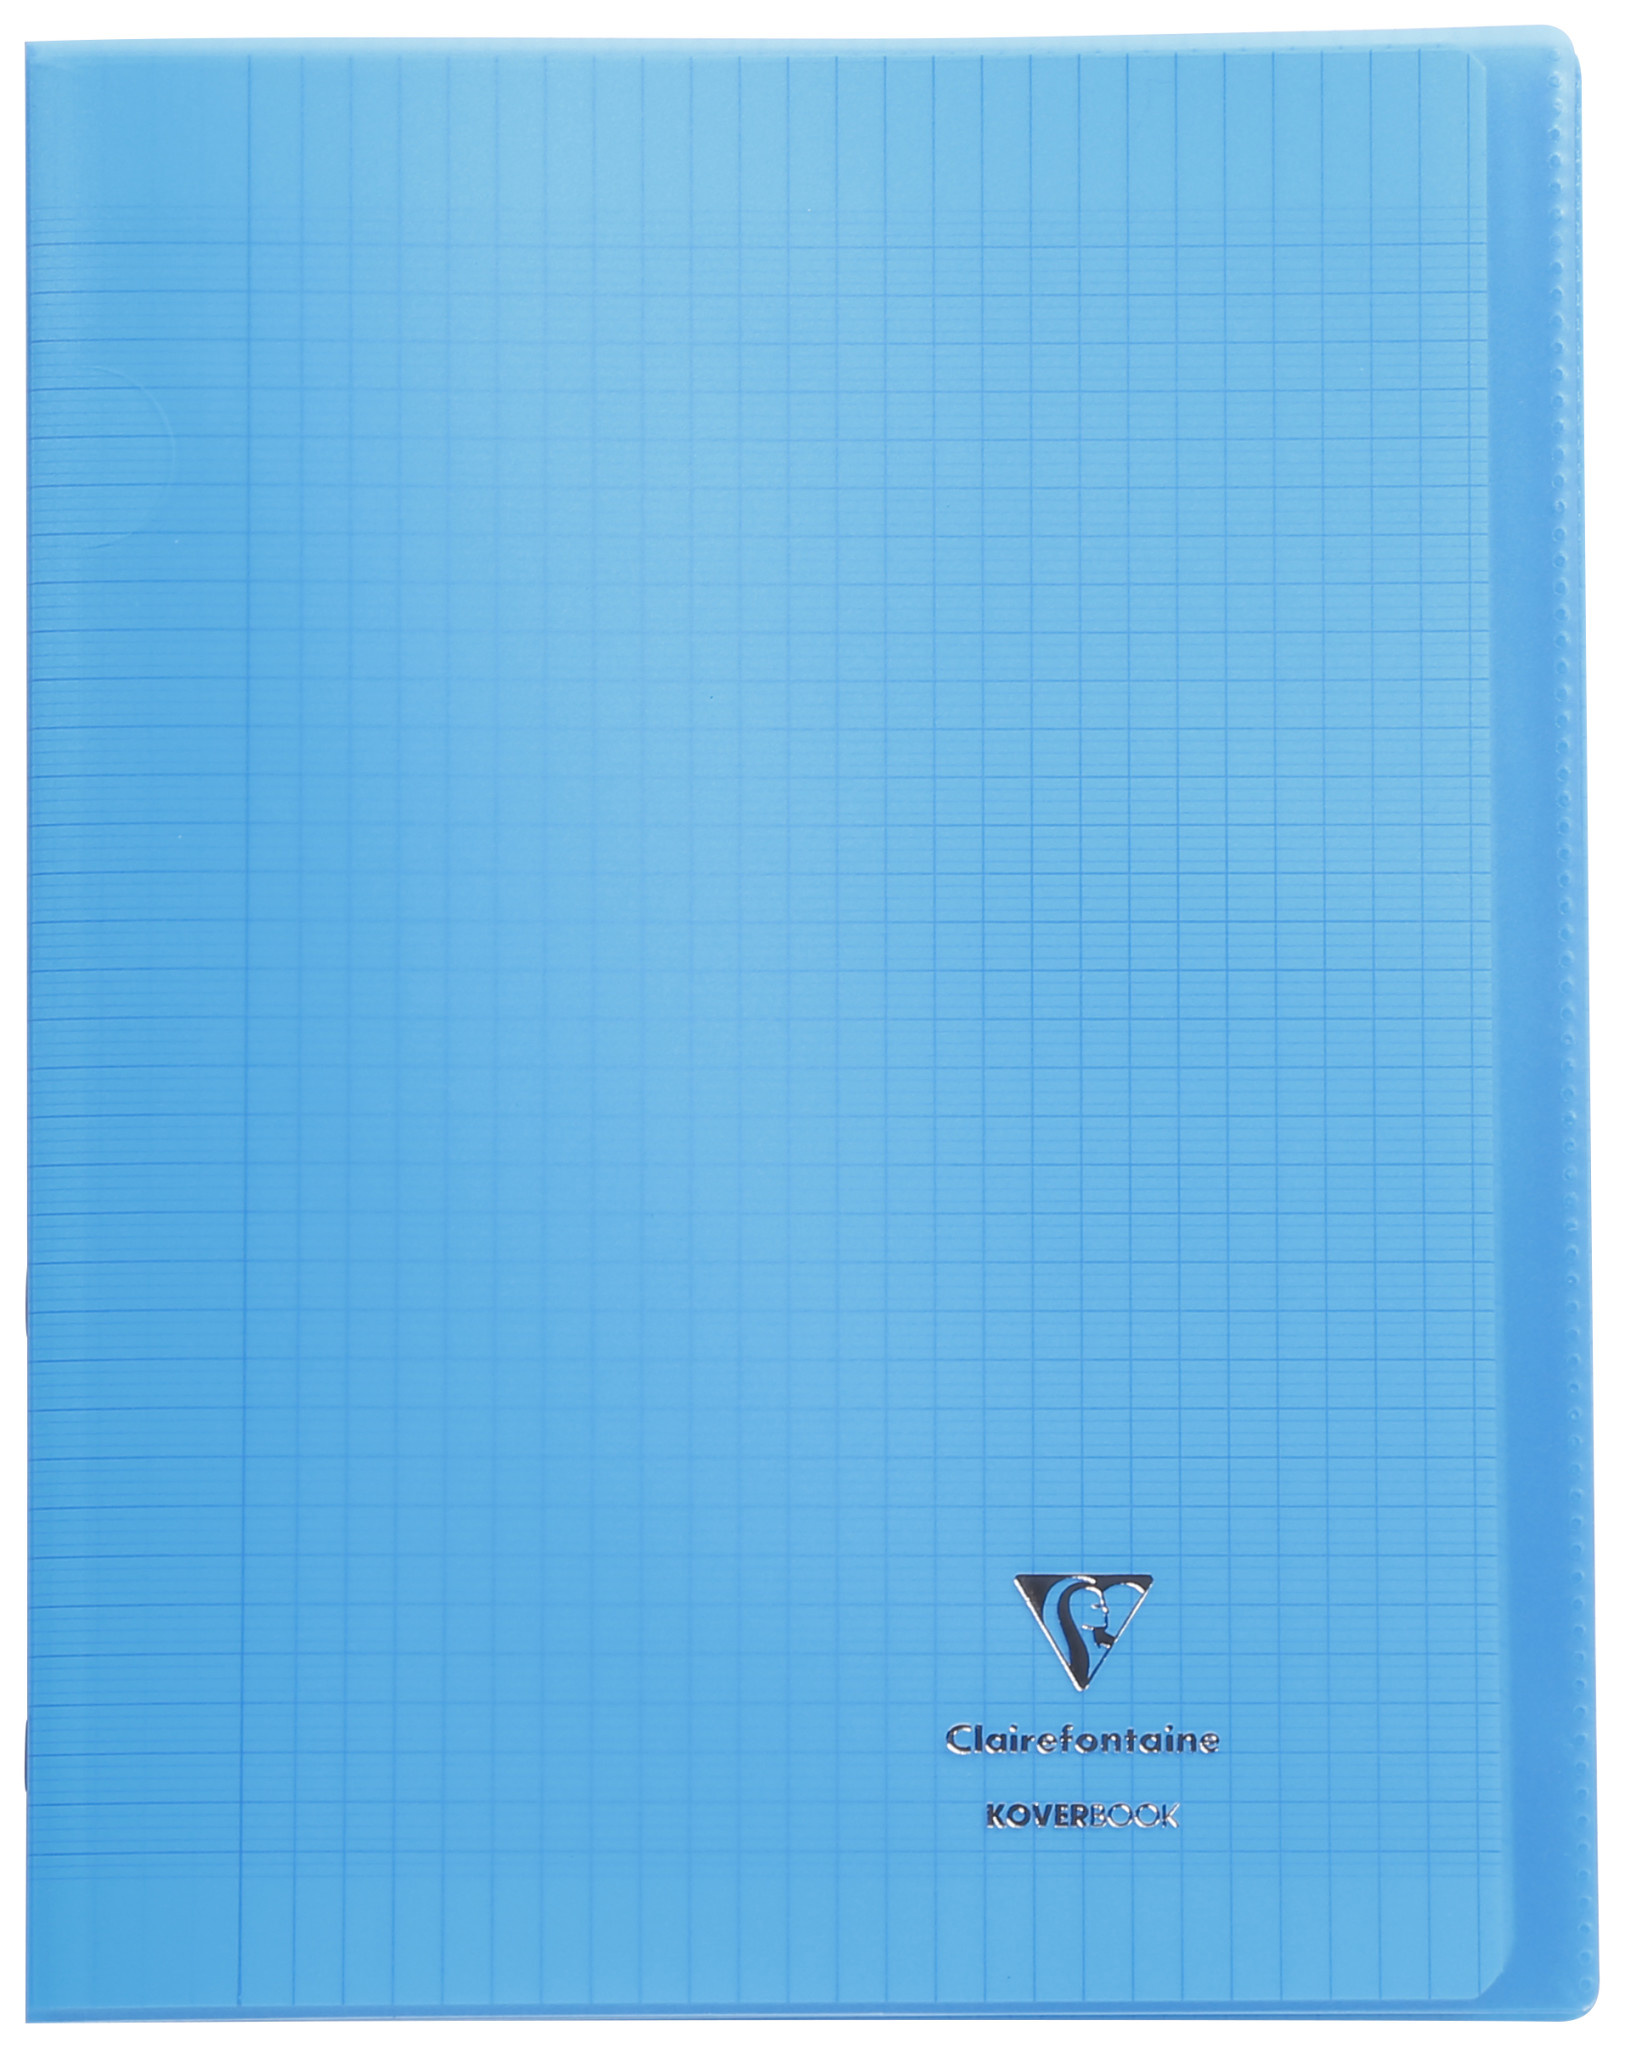 Cahier piqué - 24x32cm - Koverbook Blush - Clairefontaine - 96 pages grand  carreaux - Bleu - Cahiers - Carnets - Blocs notes - Répertoires